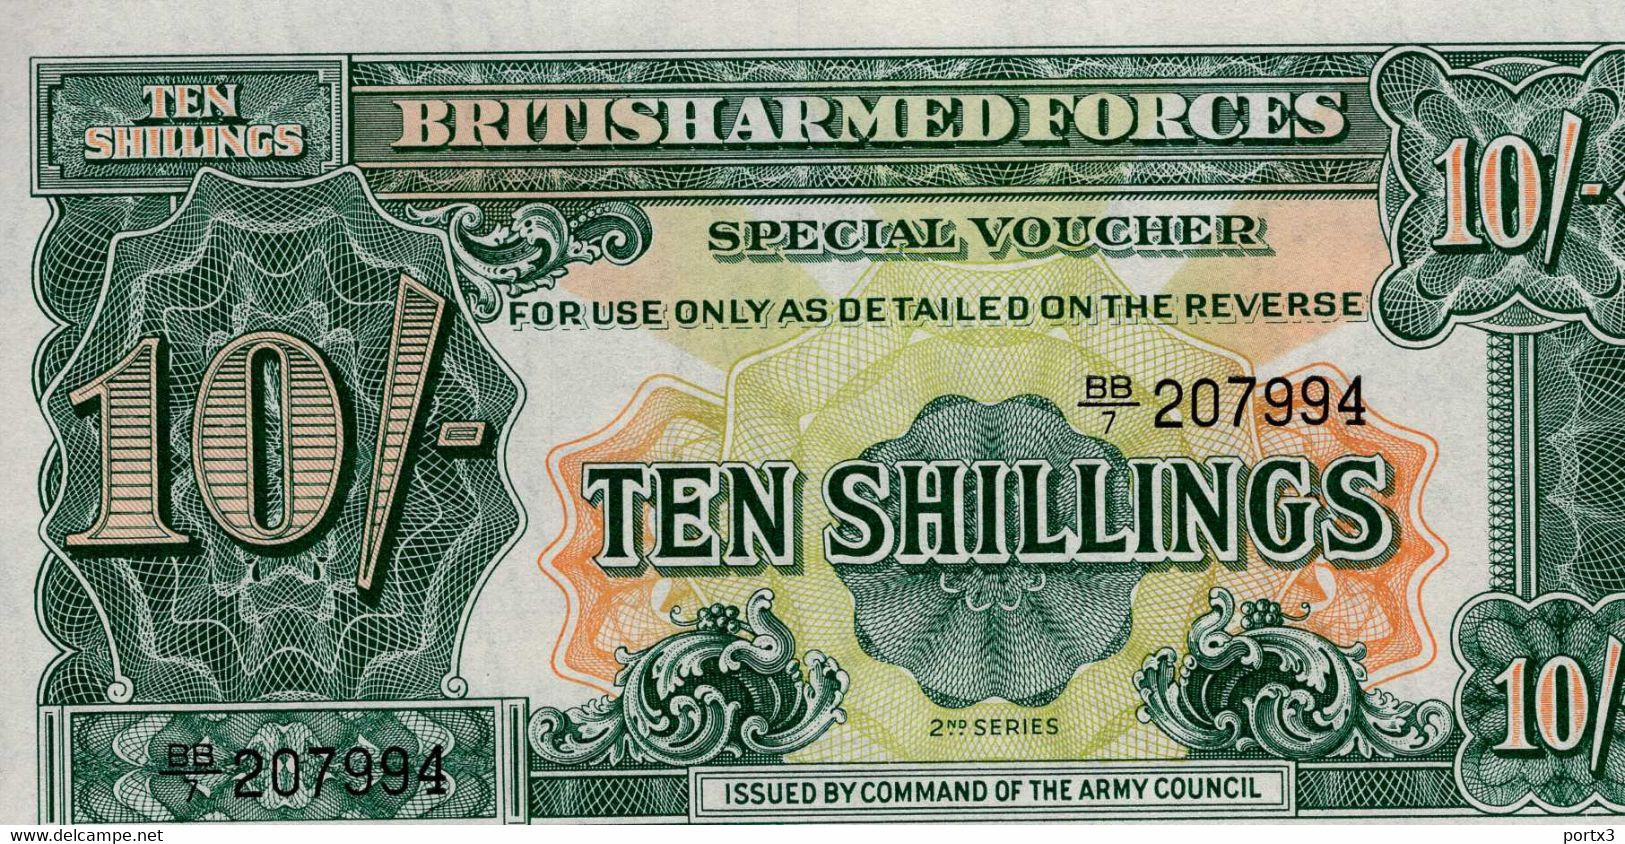 British Banknoten 5 Verschiedene With Ten Shilling BB 7 - Fuerzas Armadas Británicas & Recibos Especiales